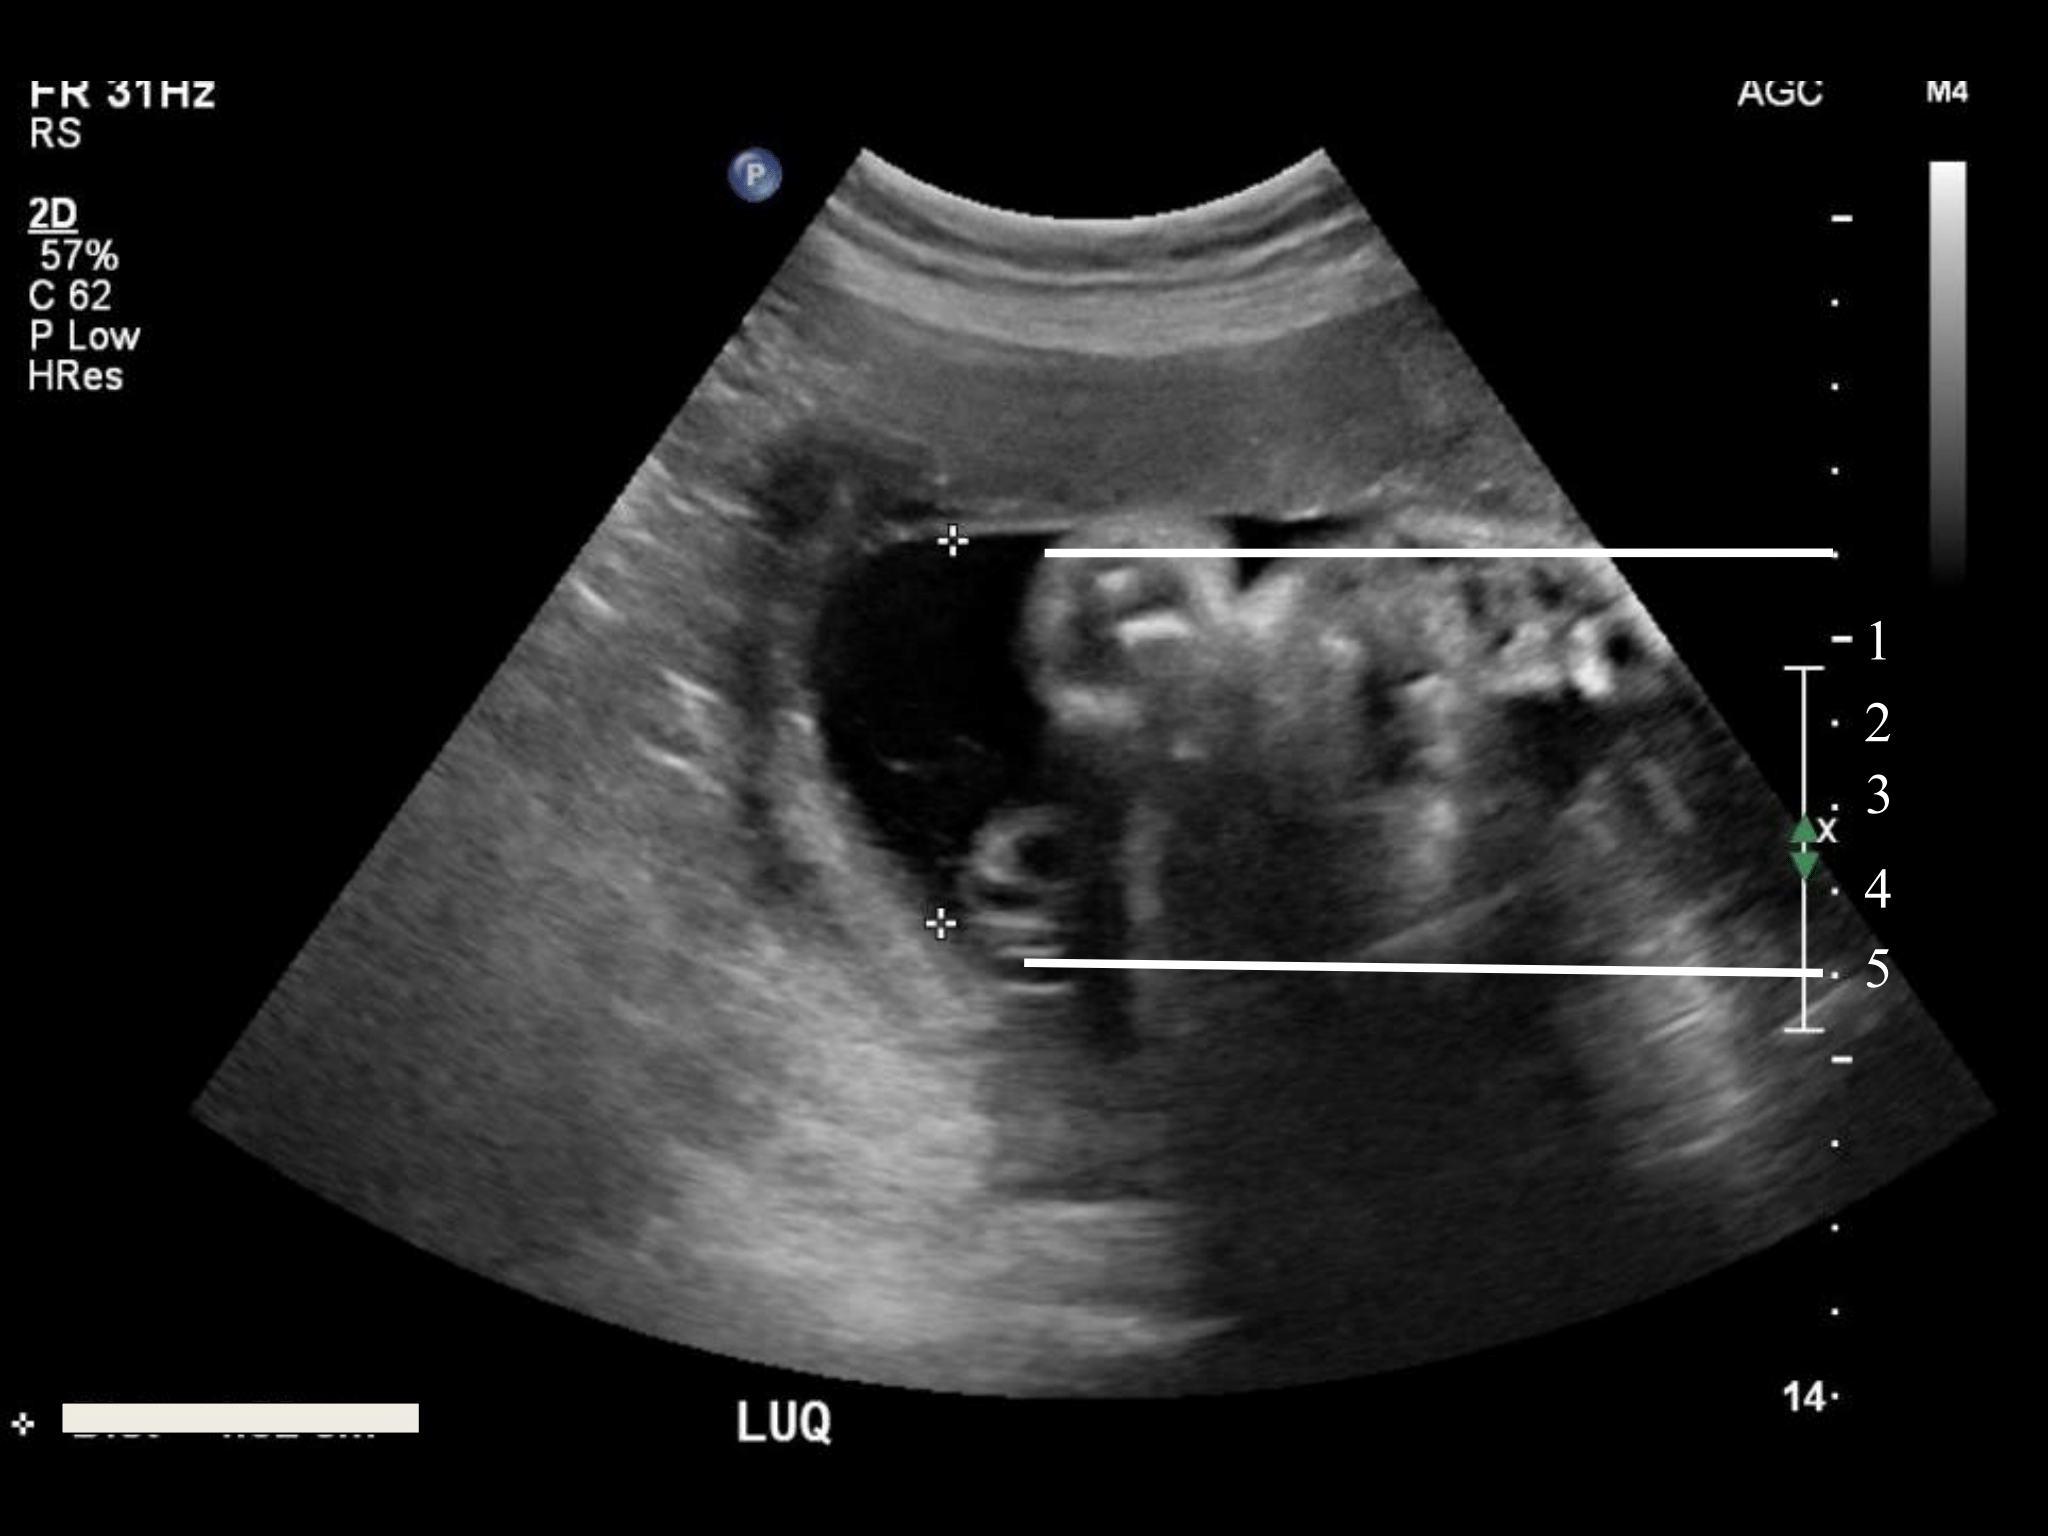 low amniotic fluid at 26 weeks